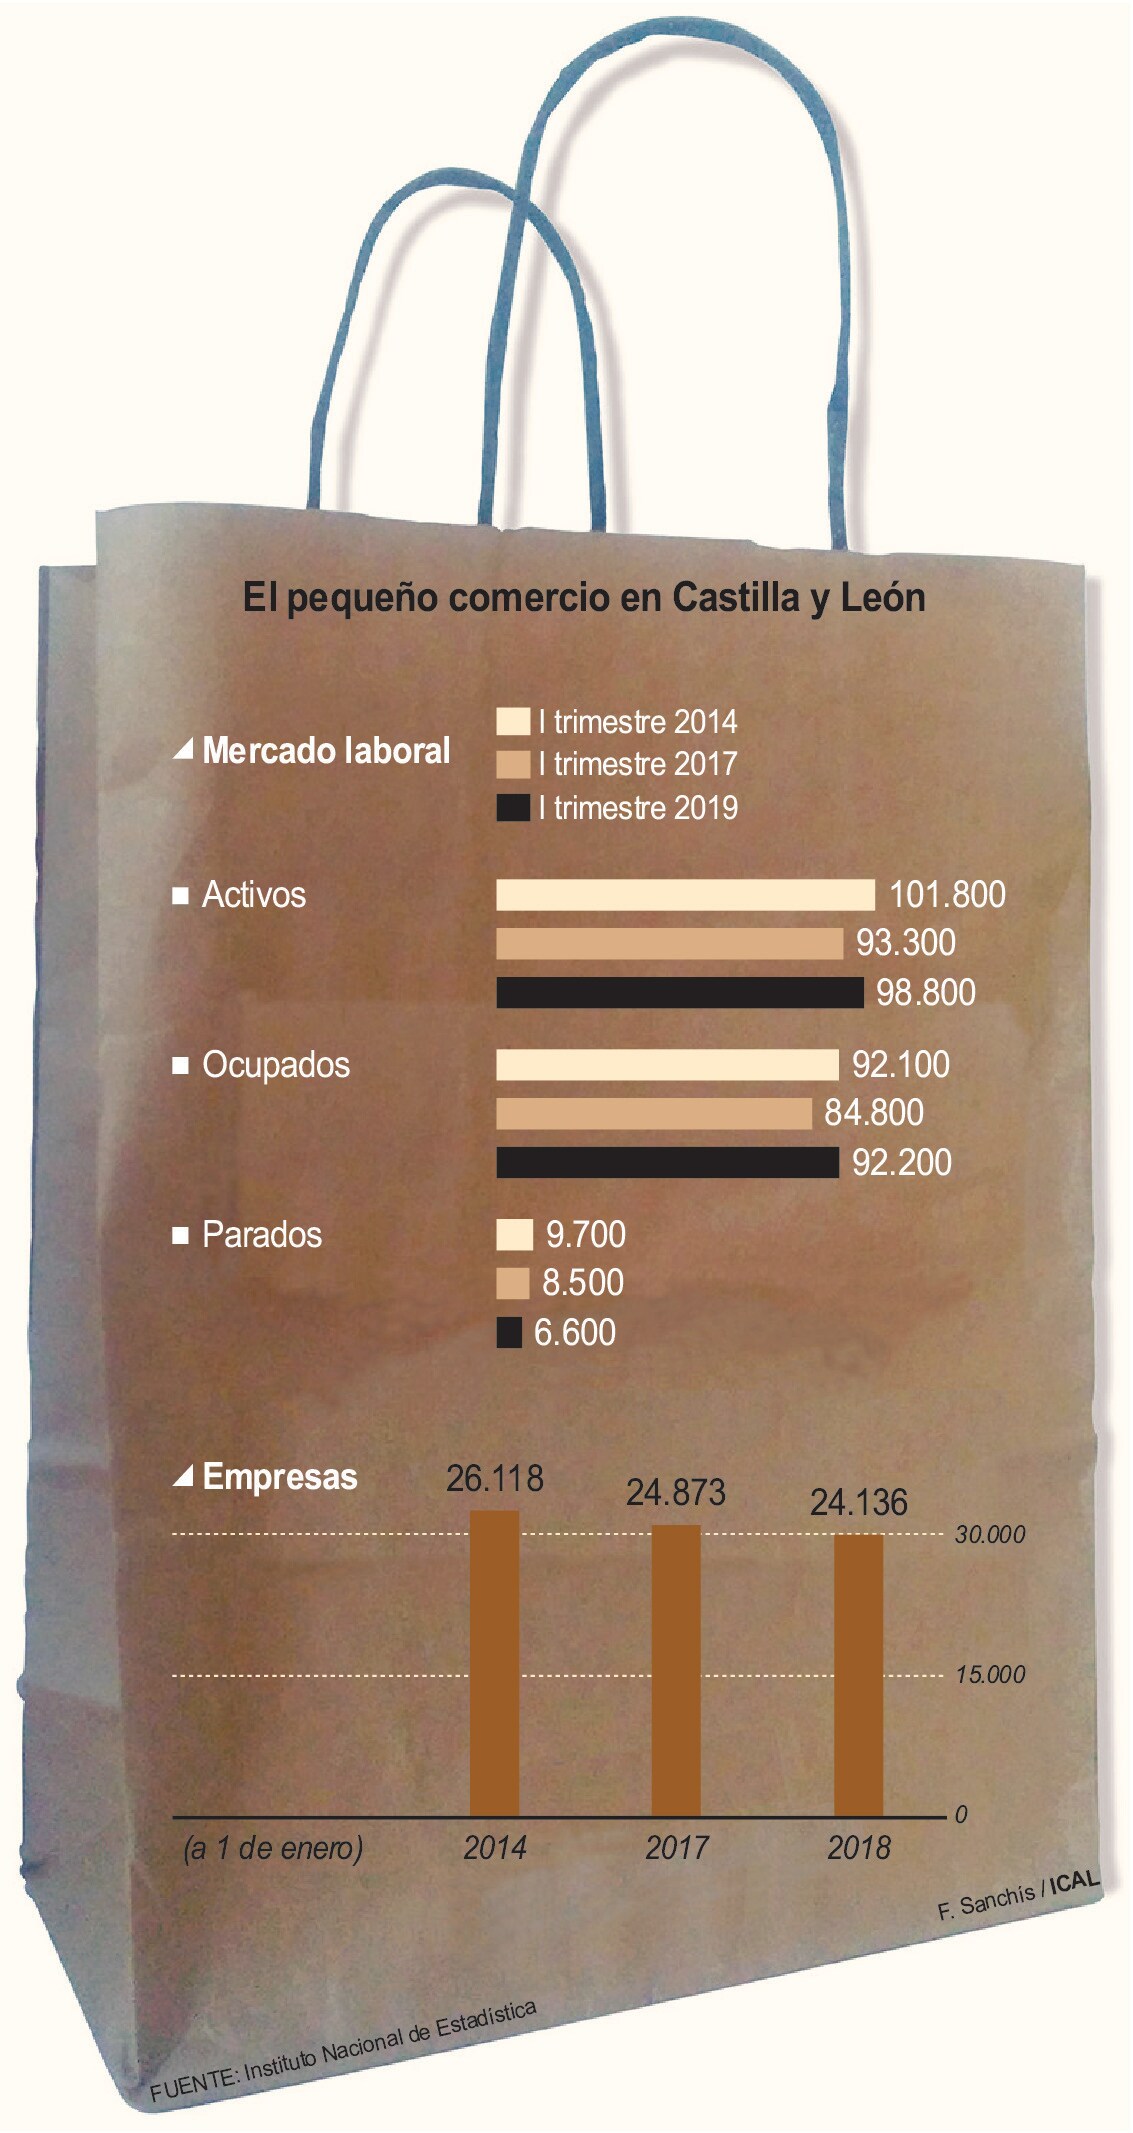 El pequeño comercio en Castilla y León